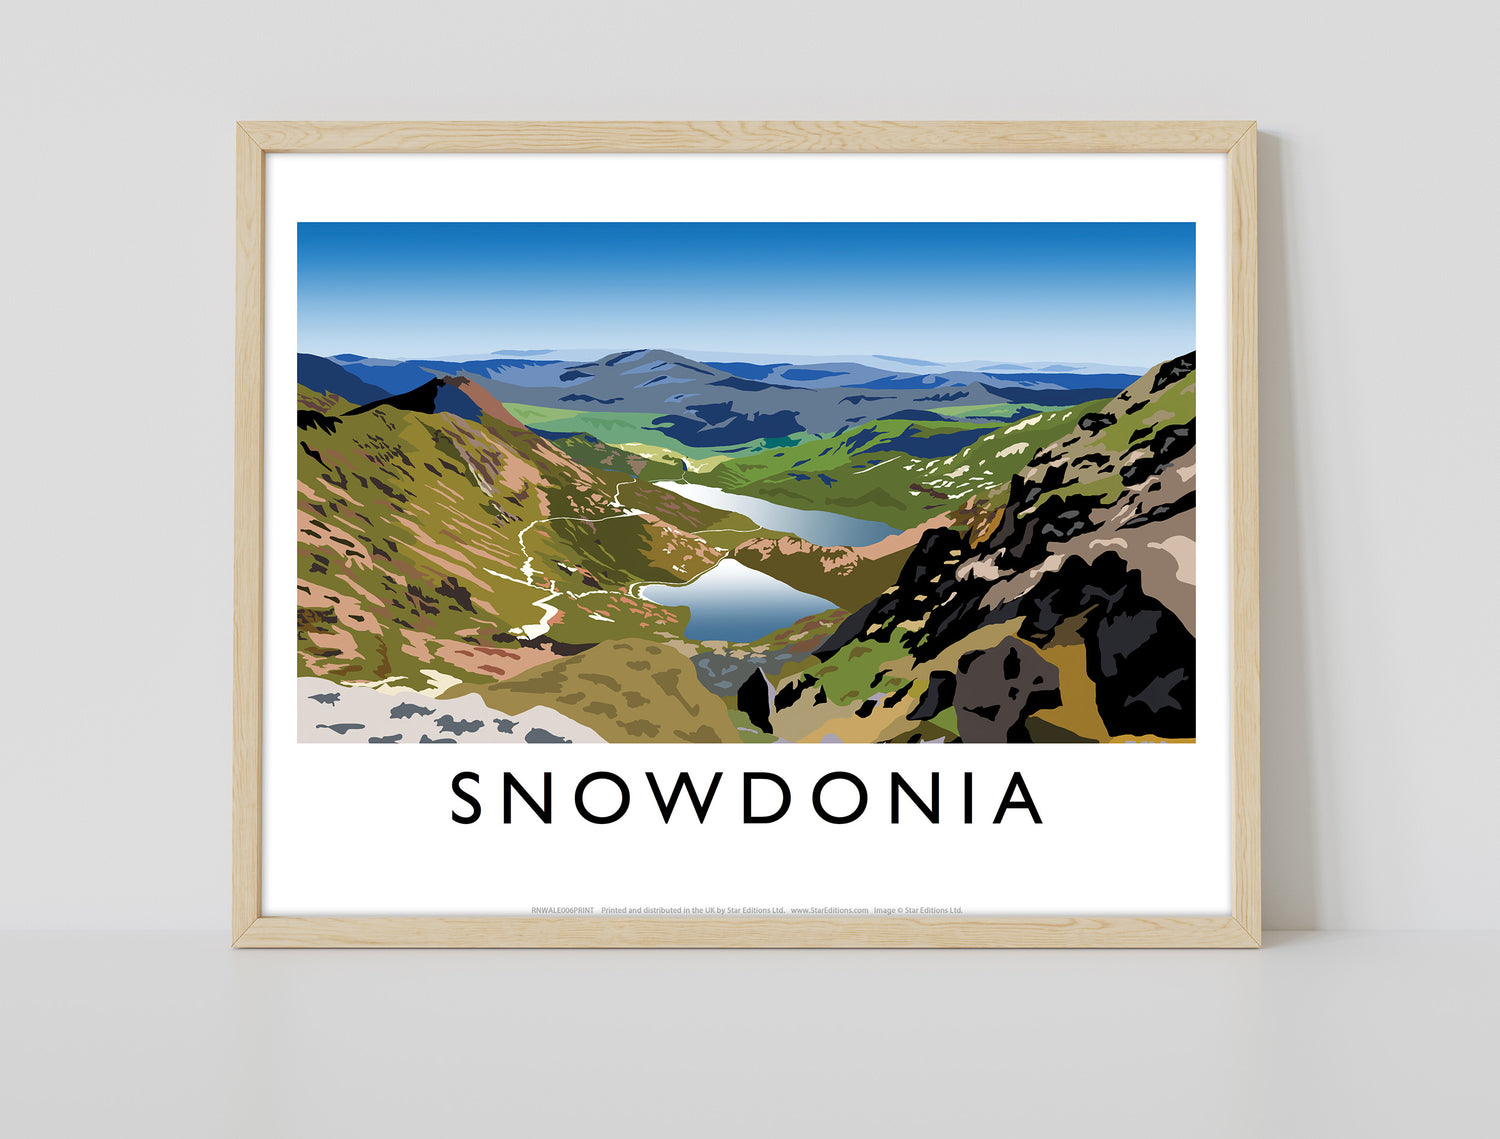 Snowdonia, Wales - Art Print